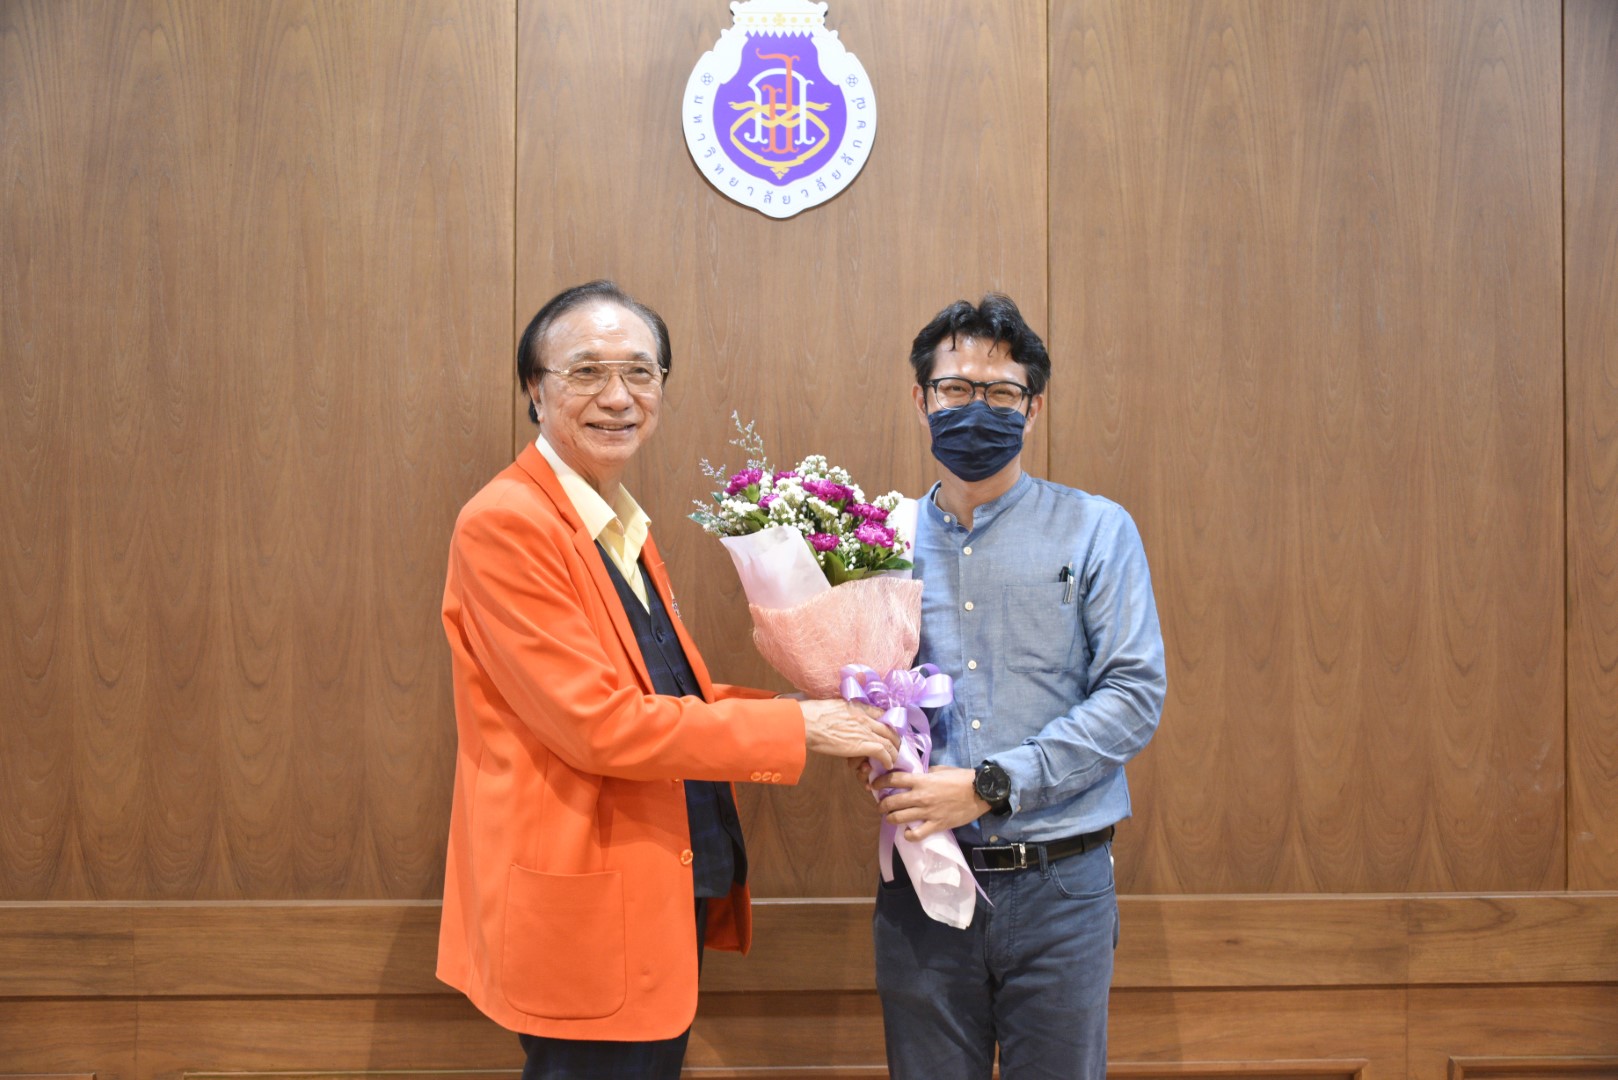 ขอแสดงความยินดีแก่คณาจารย์ ในโอกาสที่ได้รับช่อดอกไม้แสดงความยินดีในโอกาสที่ได้รับประกาศนียบัตร UKPSF